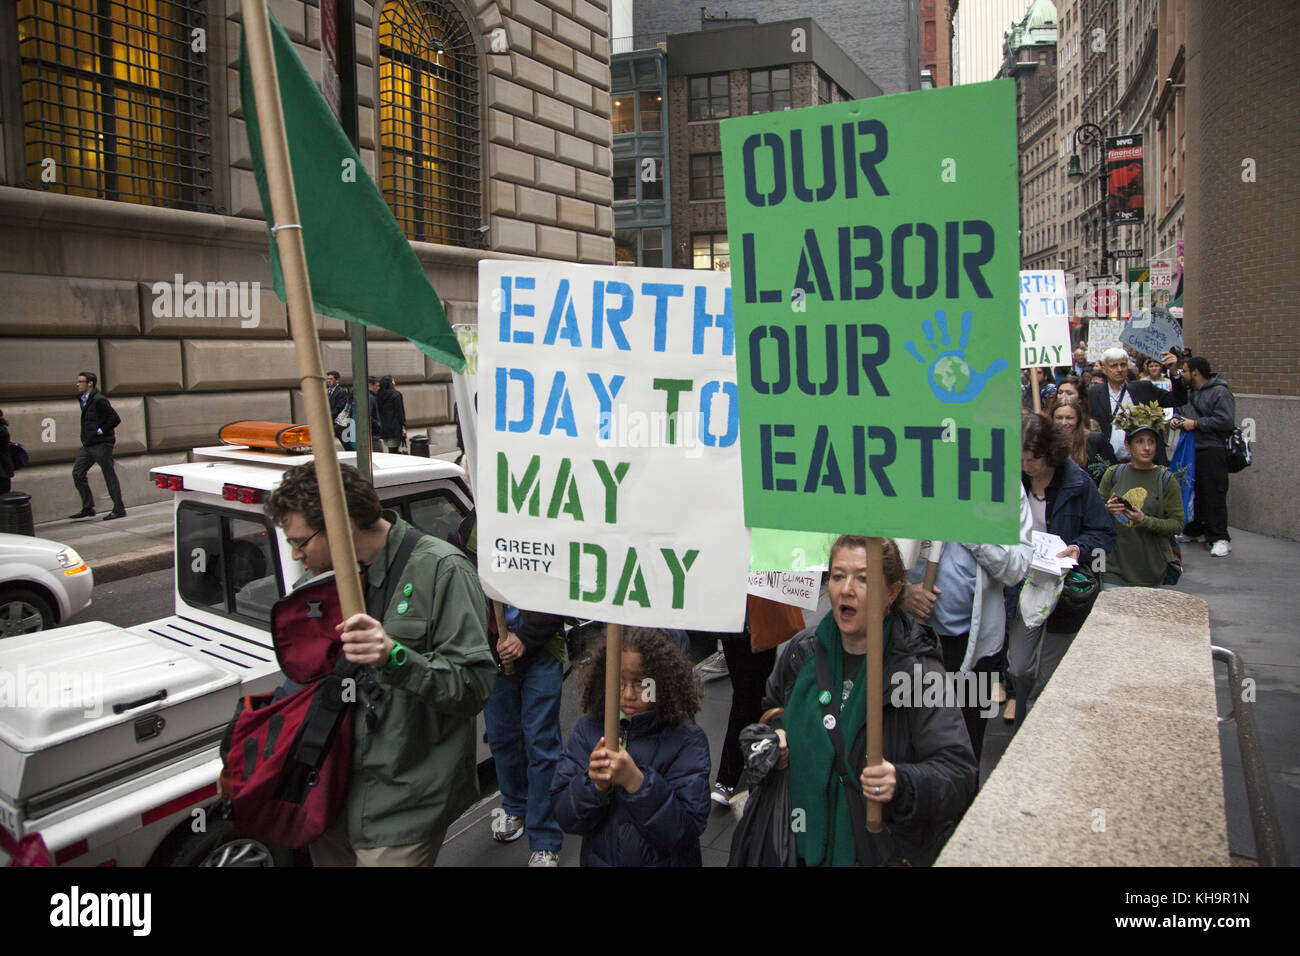 Les militants de l'environnement rallye sur la Journée de la Terre à Zuccotti Park, puis mars à Wall Street appelant à un changement de système pas le changement climatique. Le mouvement occupy est toujours autour de Paris il me semble. Banque D'Images